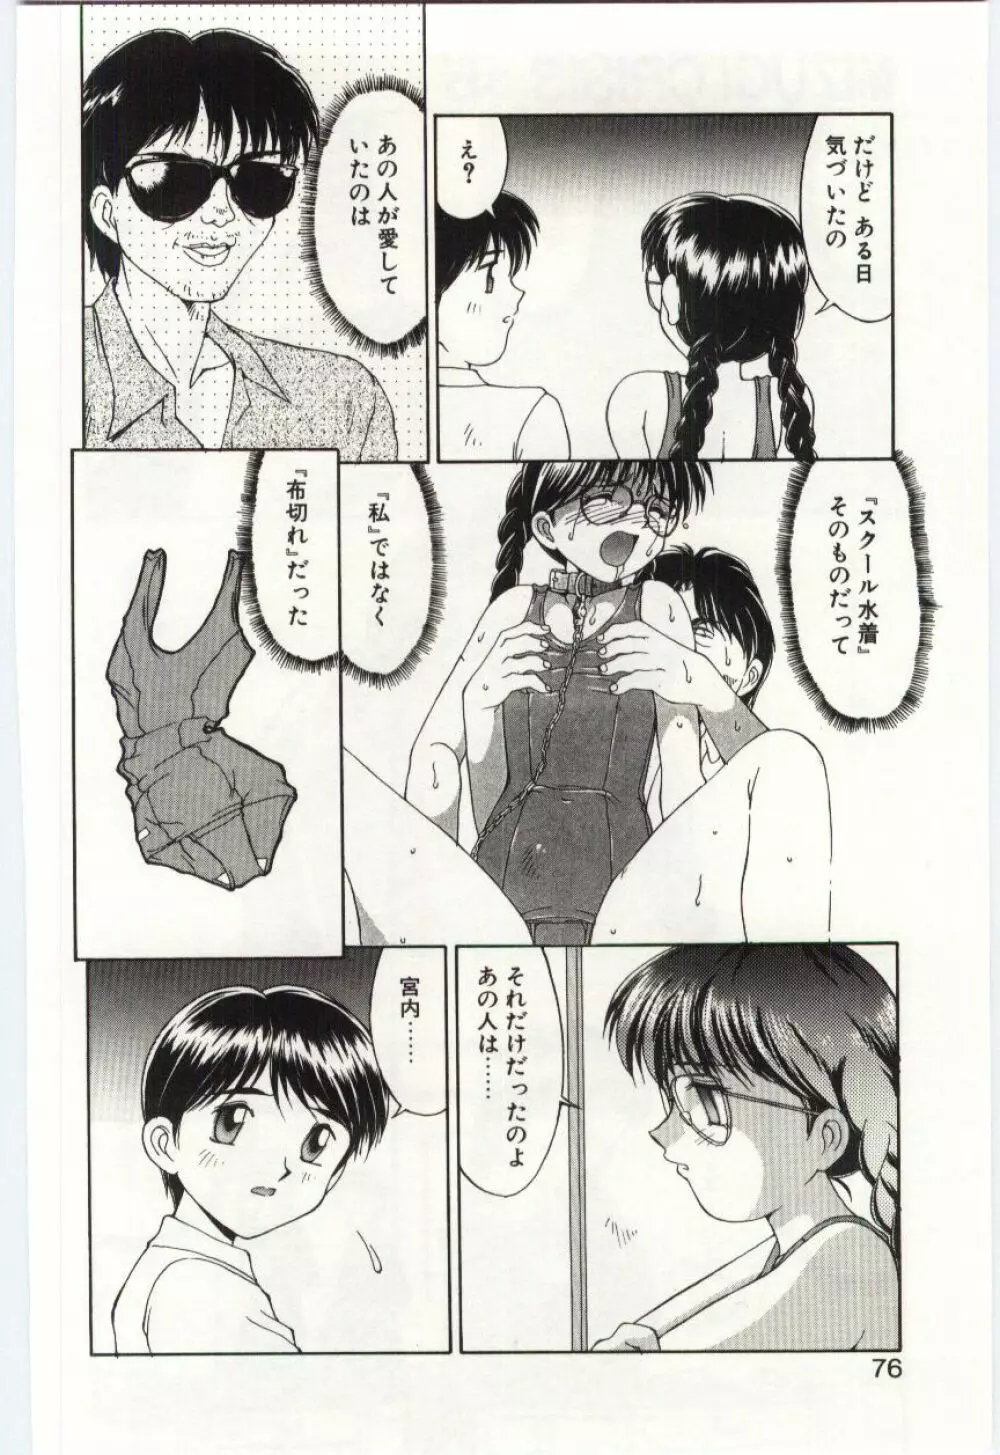 Mizugi Crisis part 1 – JP 75ページ